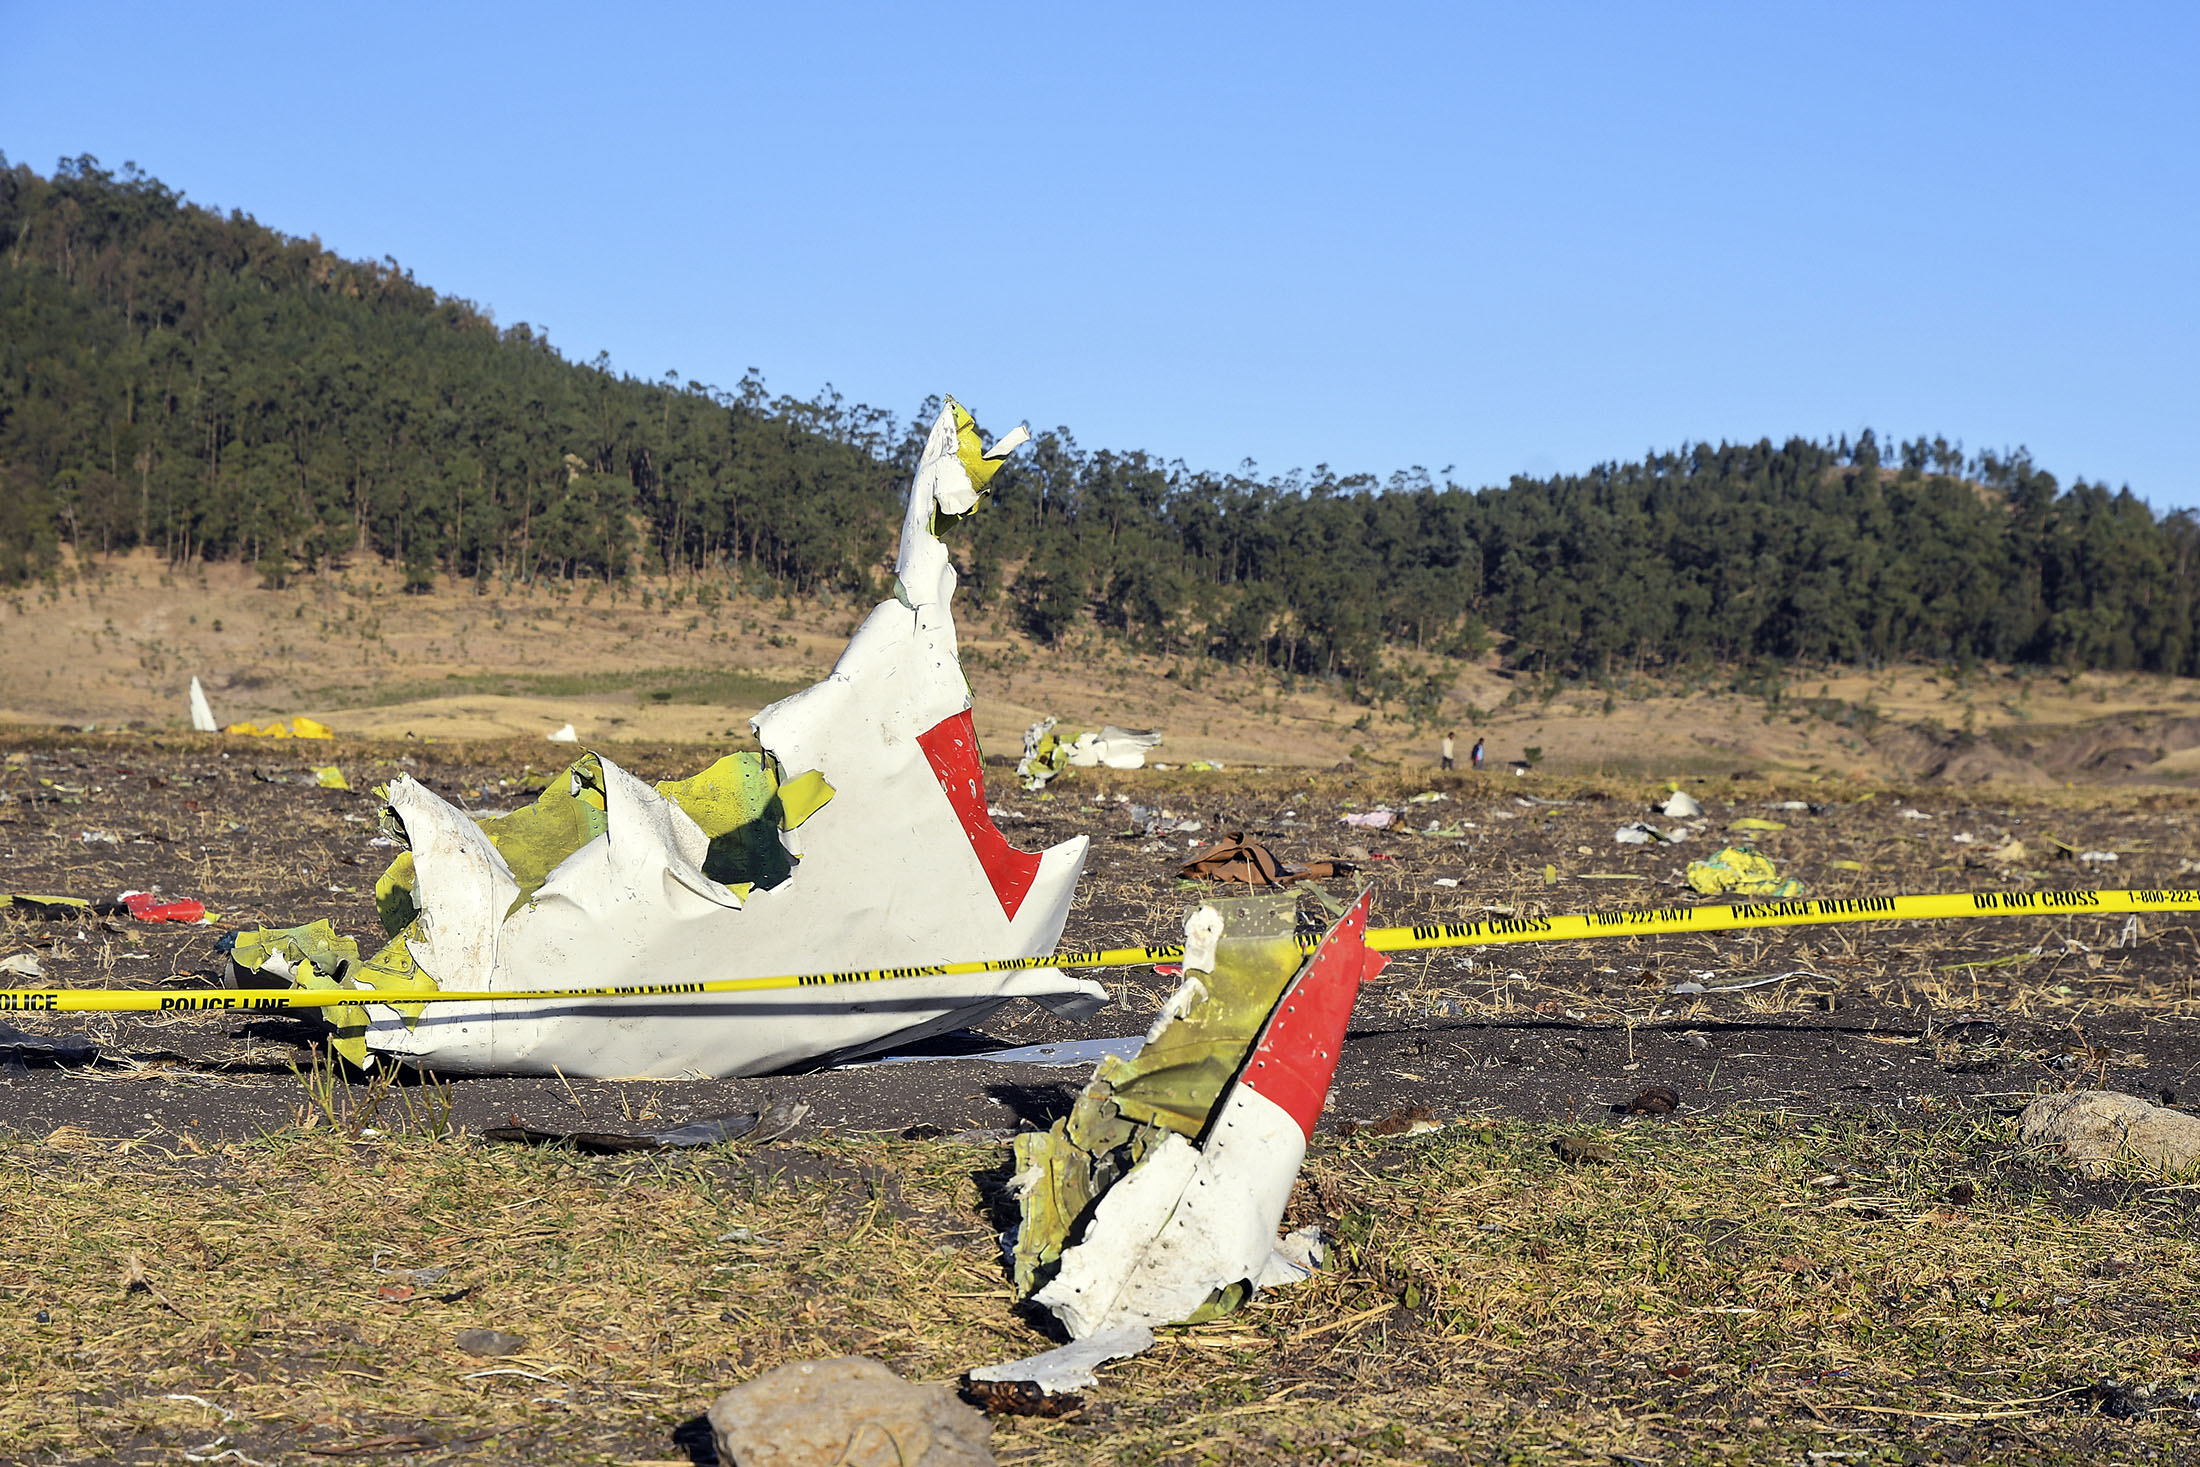 エチオピア航空機墜落 時価総額550億ドル増加のボーイング株に試練 Bloomberg